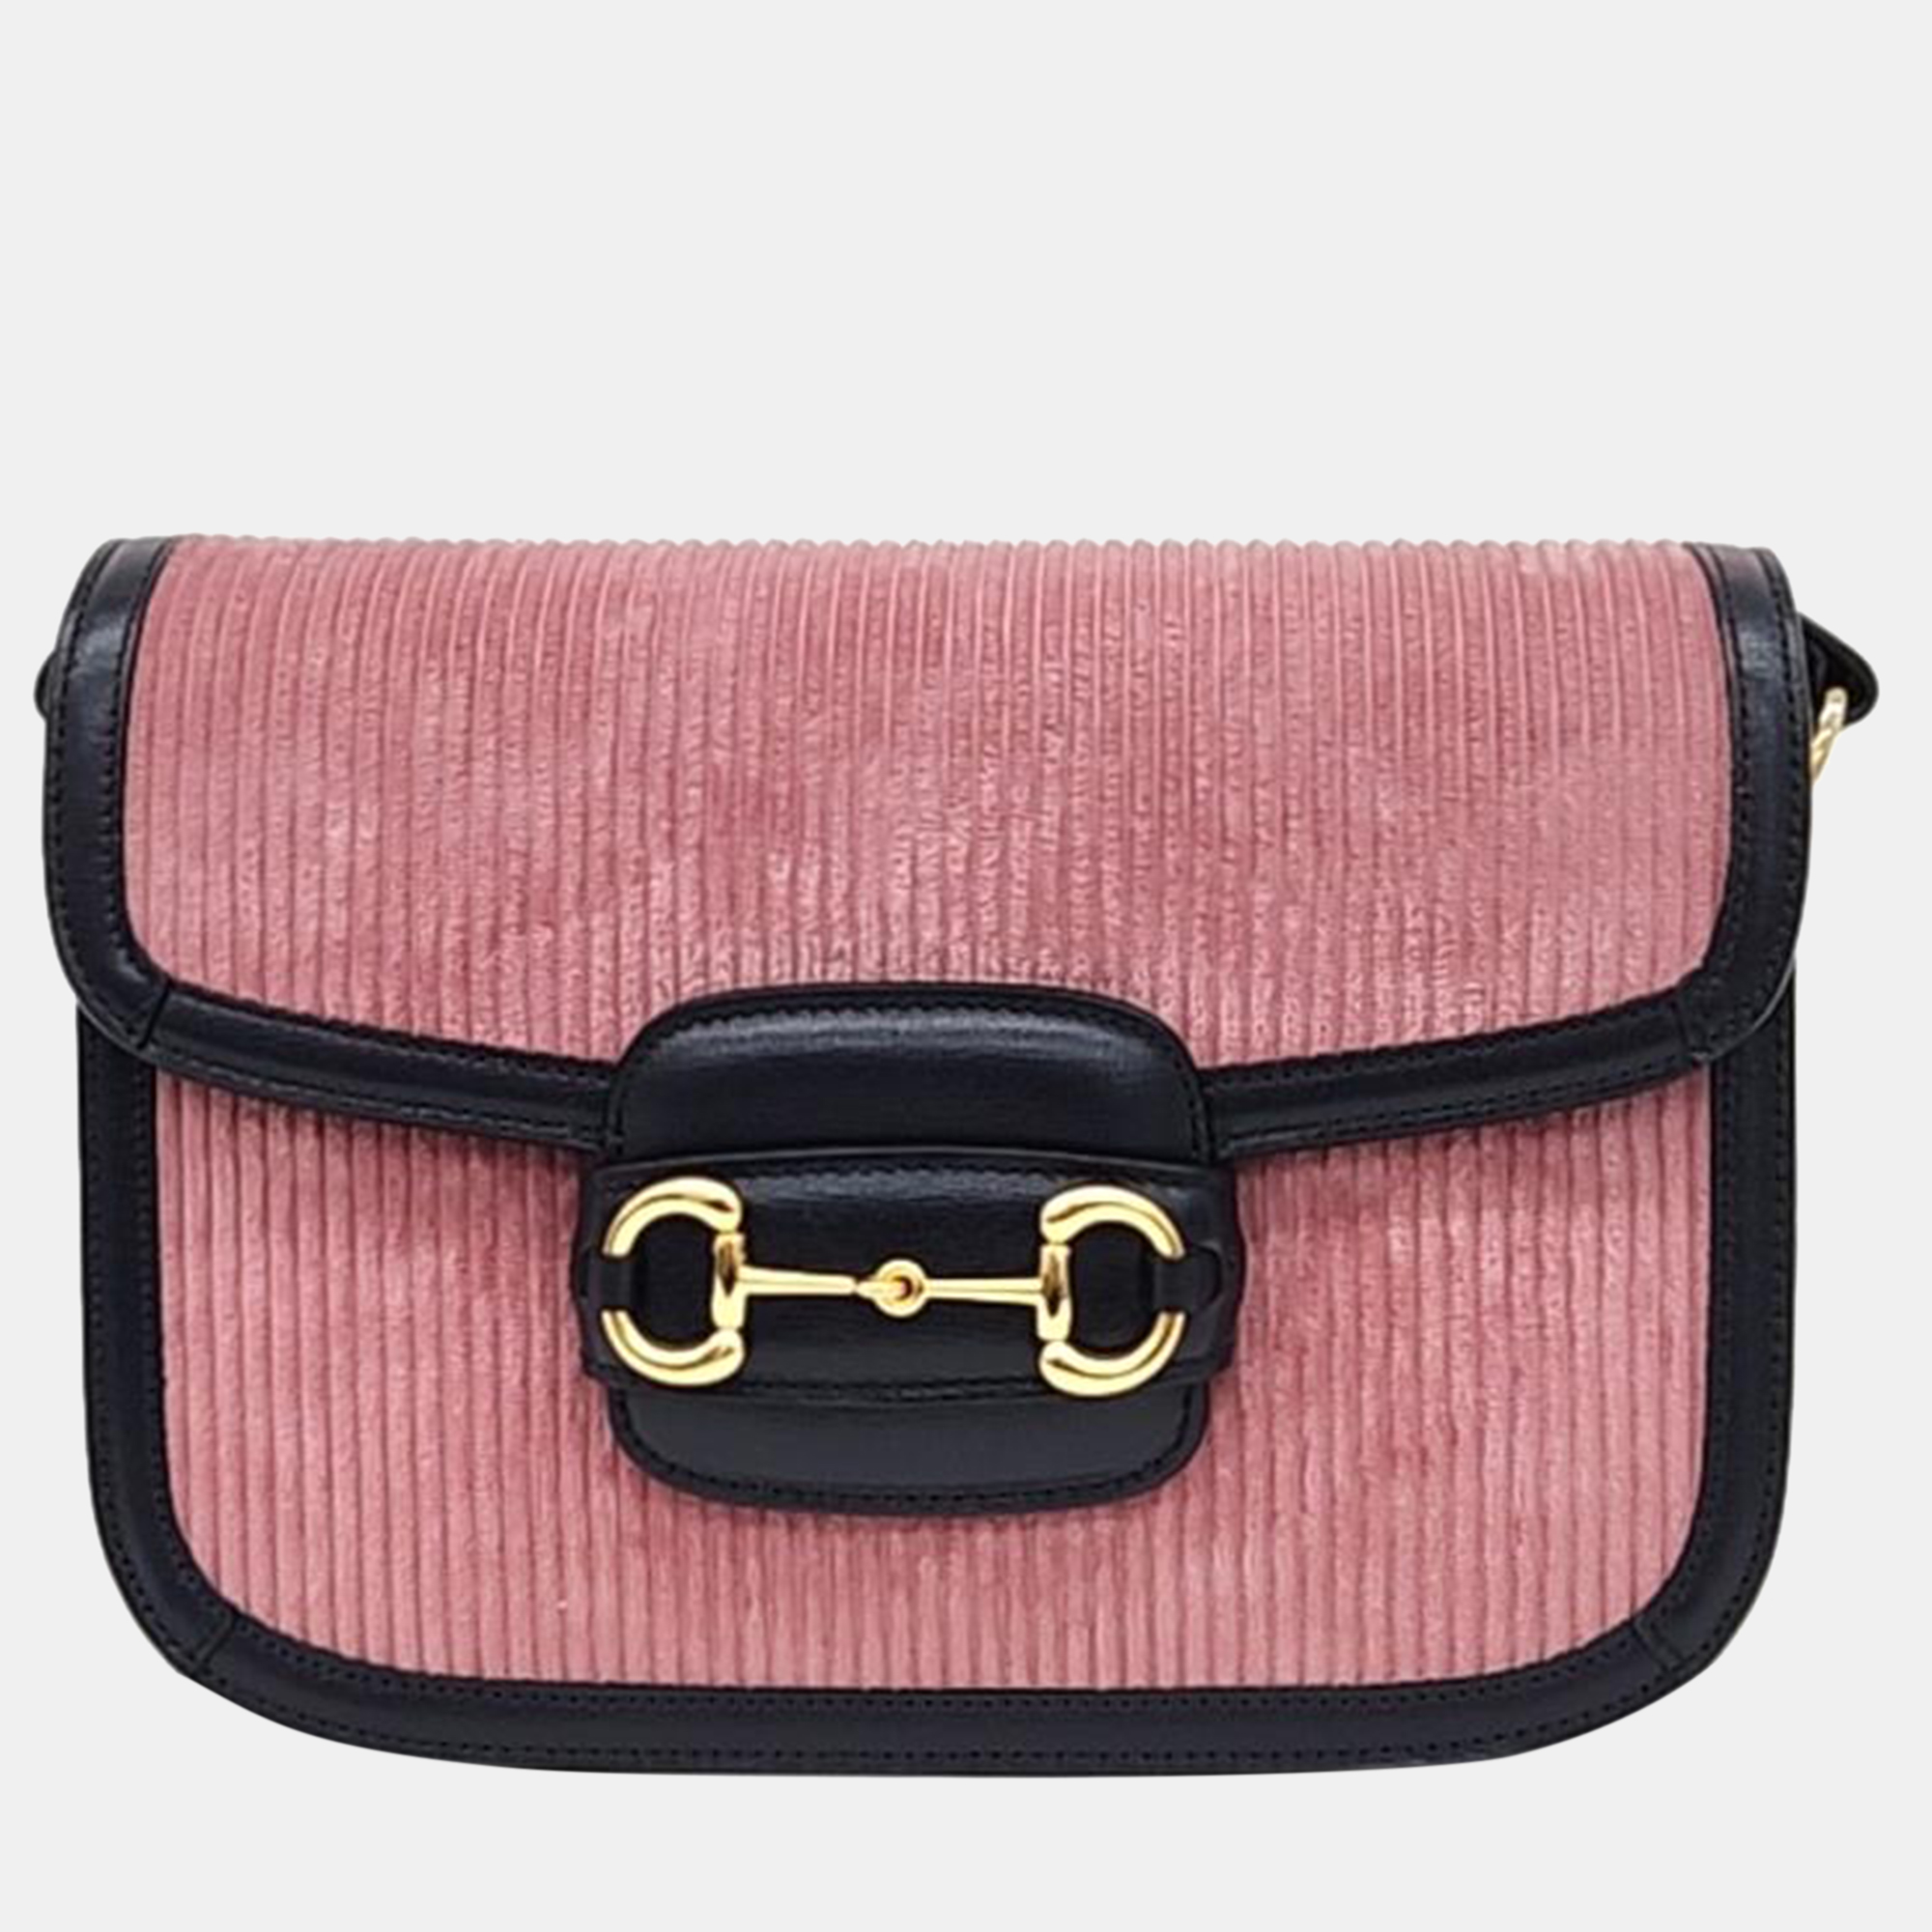 Gucci pink/black corduroy and leather 1955 horsebit shoulder bag